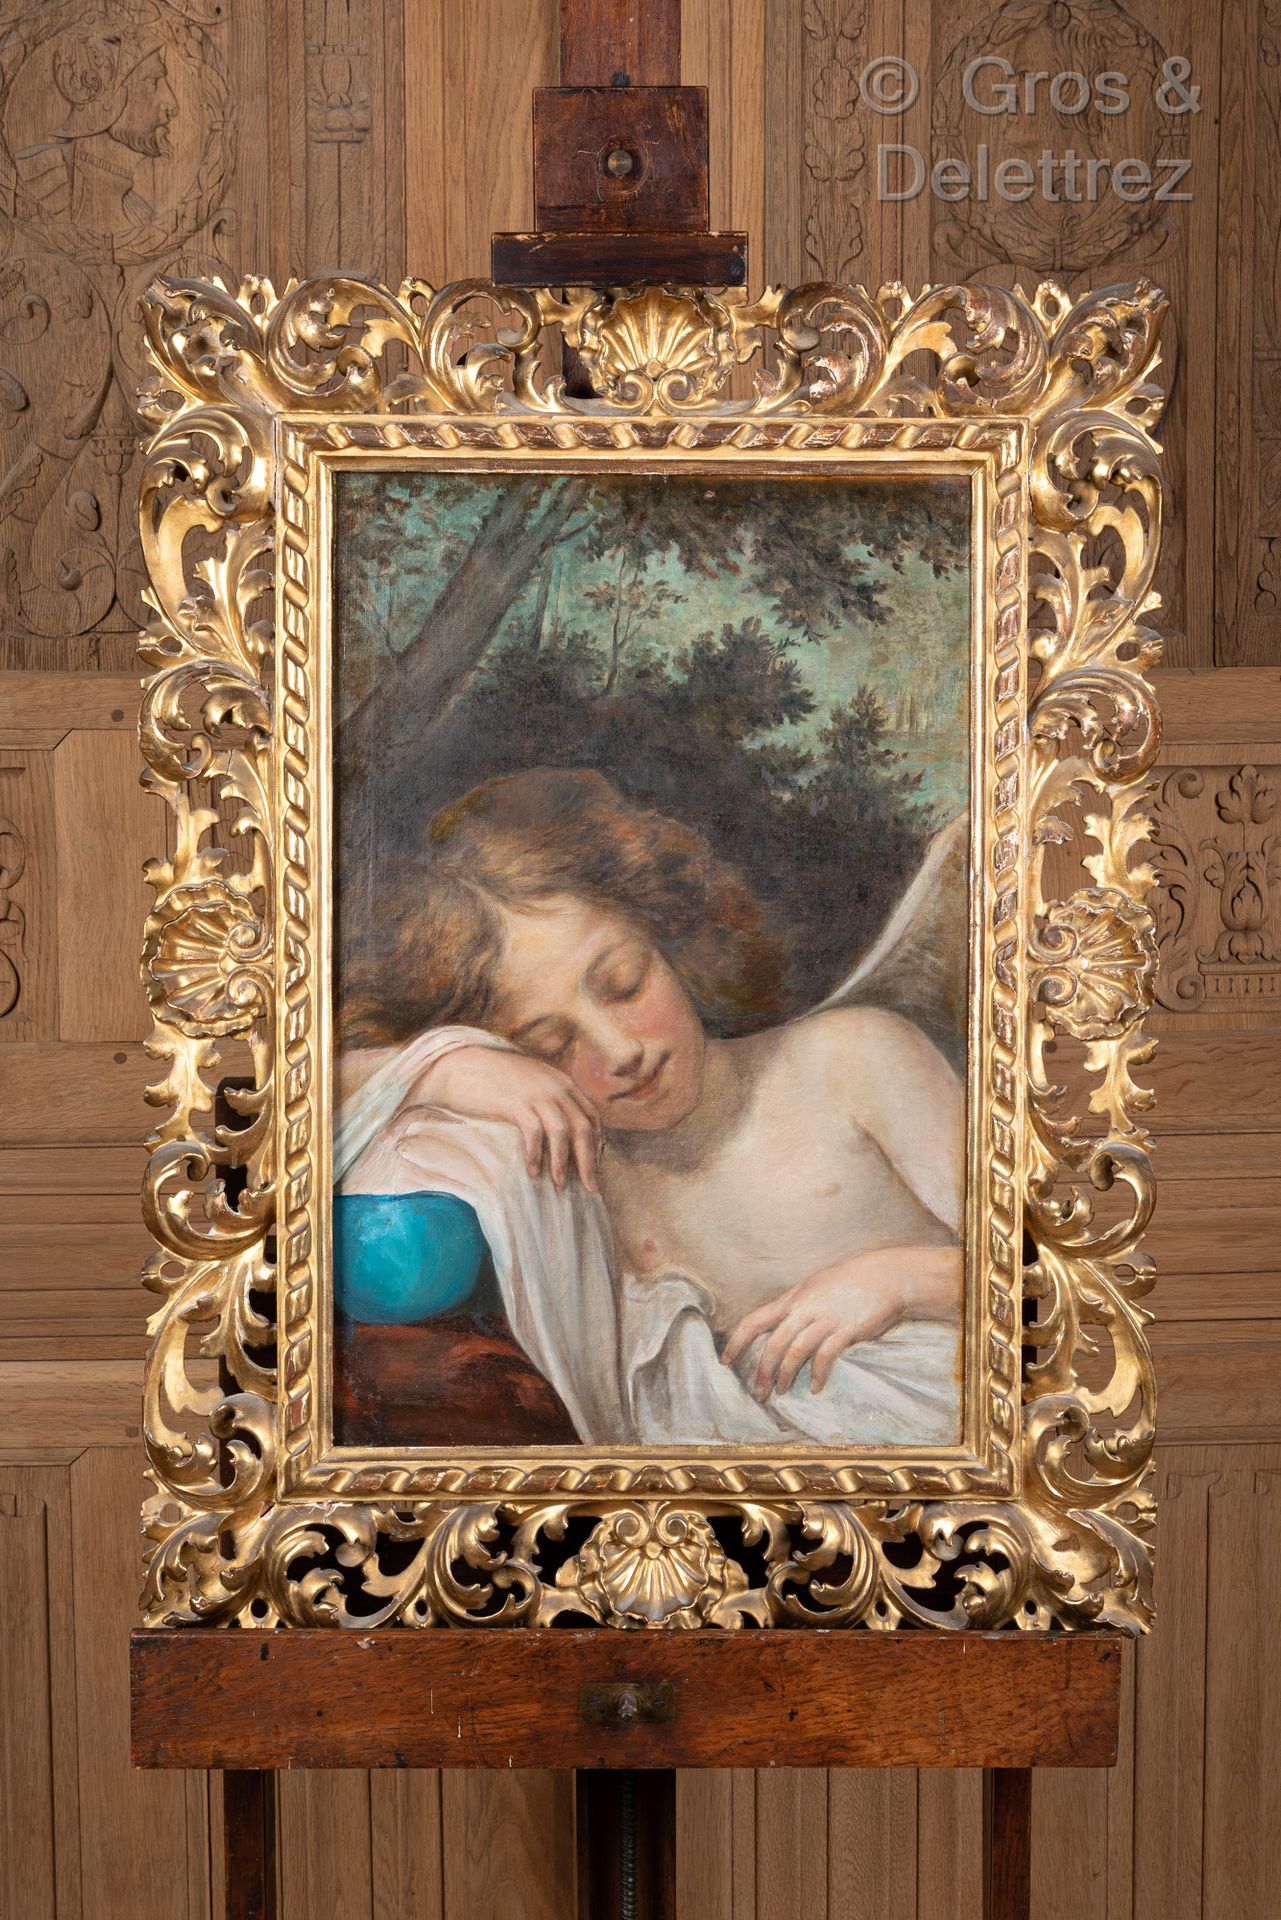 ECOLE FIN XIXe SIÈCLE 沉睡的爱

布面油画

62 x 41 厘米

美丽的镀金木框，有树叶和贝壳